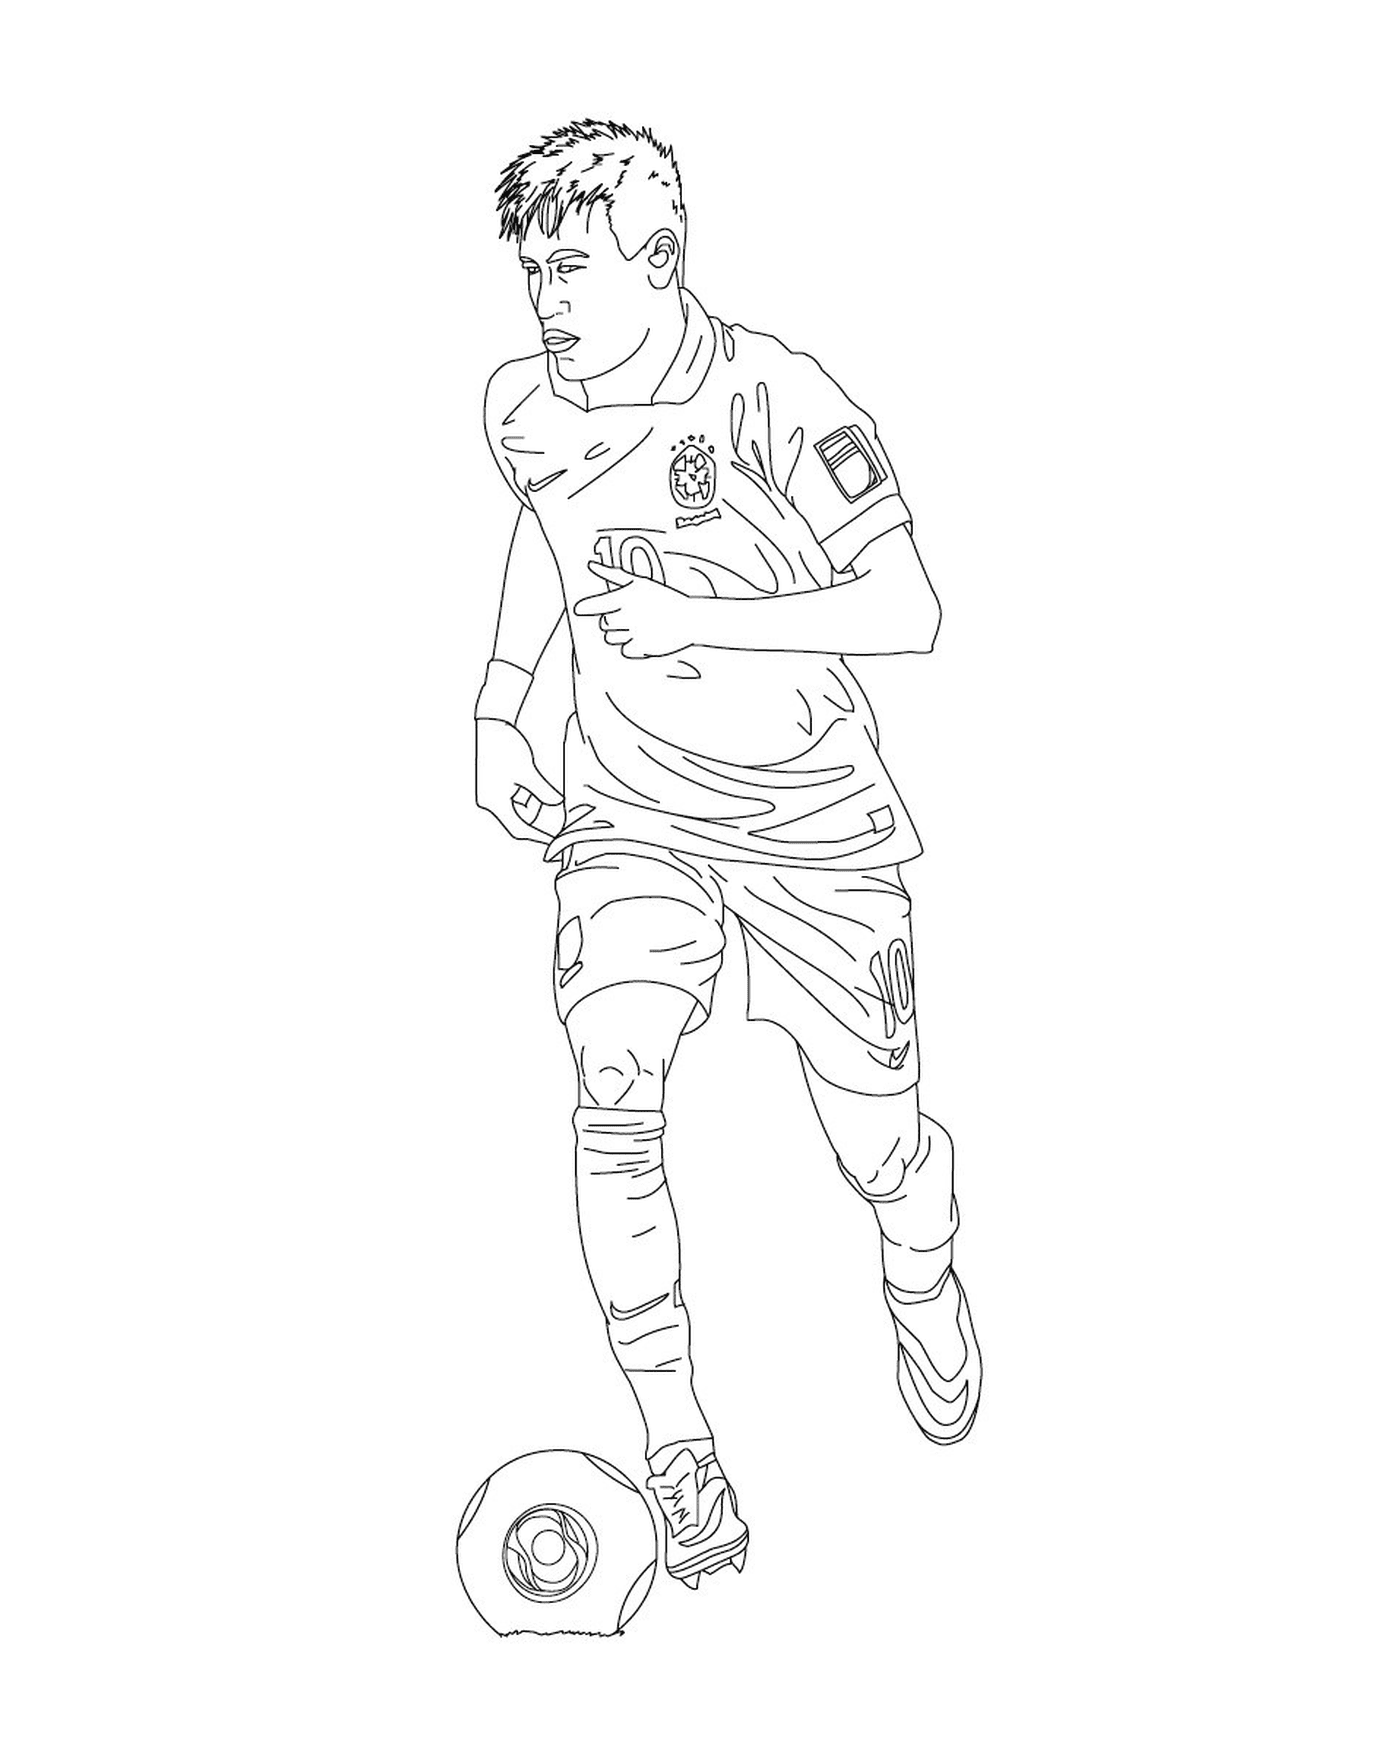  A man playing soccer, Neymar 